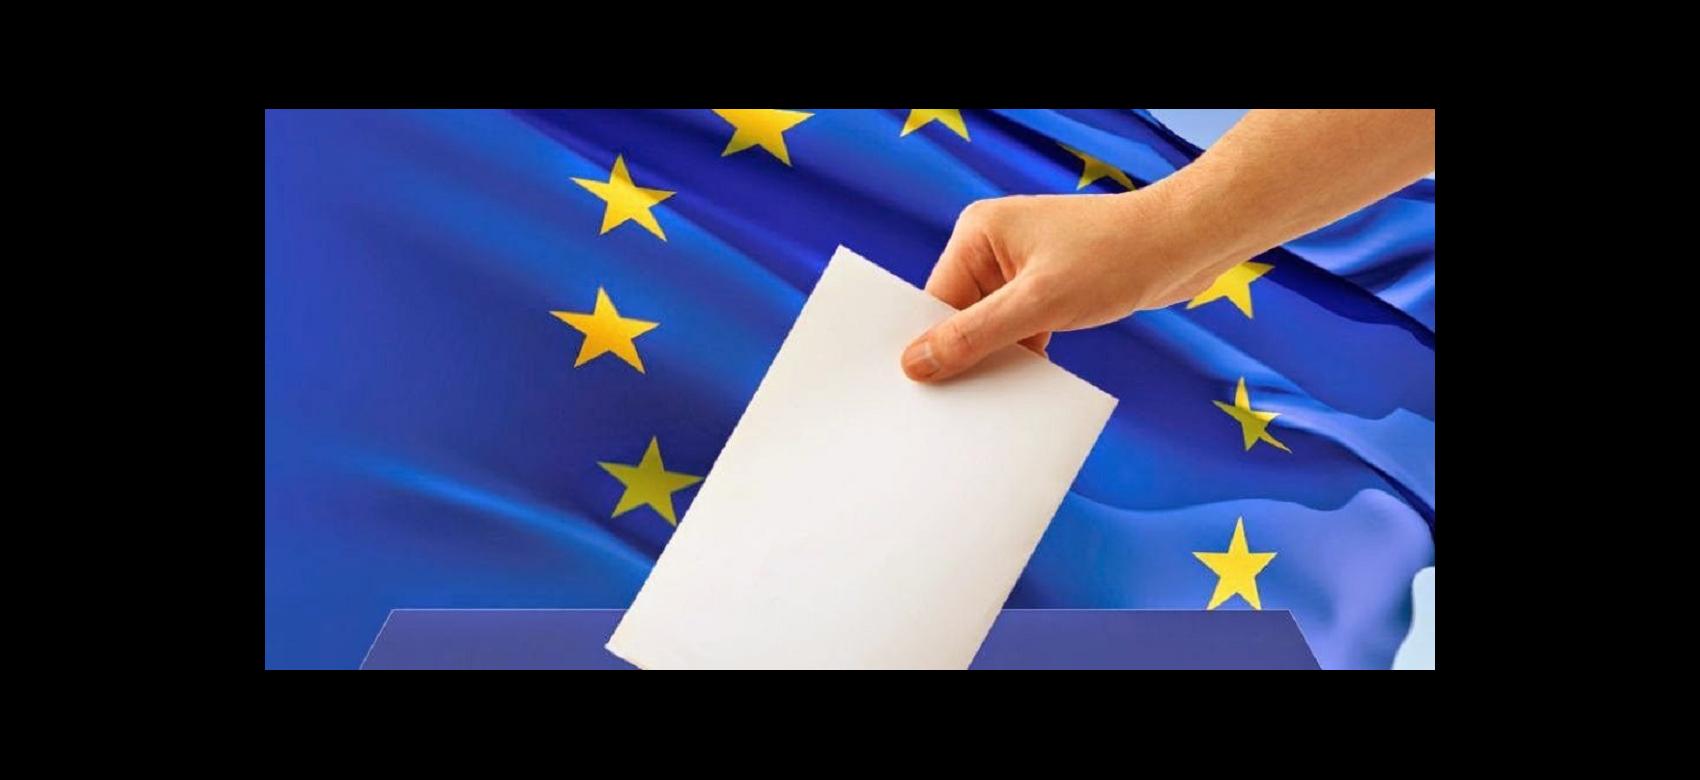 Mano depositando un voto, con bandera de la UE al fondo